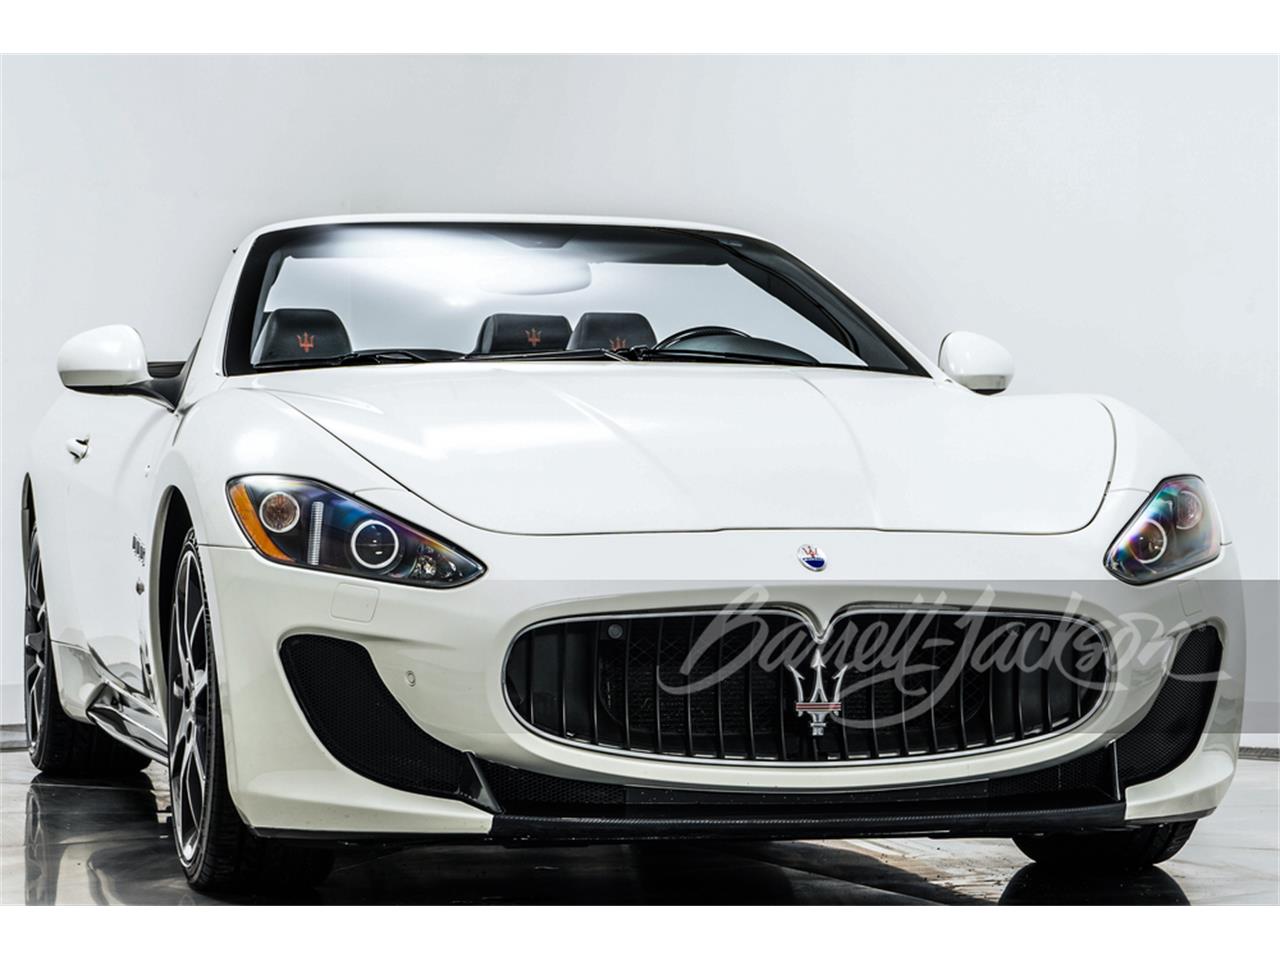 For Sale at Auction: 2012 Maserati GranTurismo in Scottsdale, Arizona for sale in Scottsdale, AZ